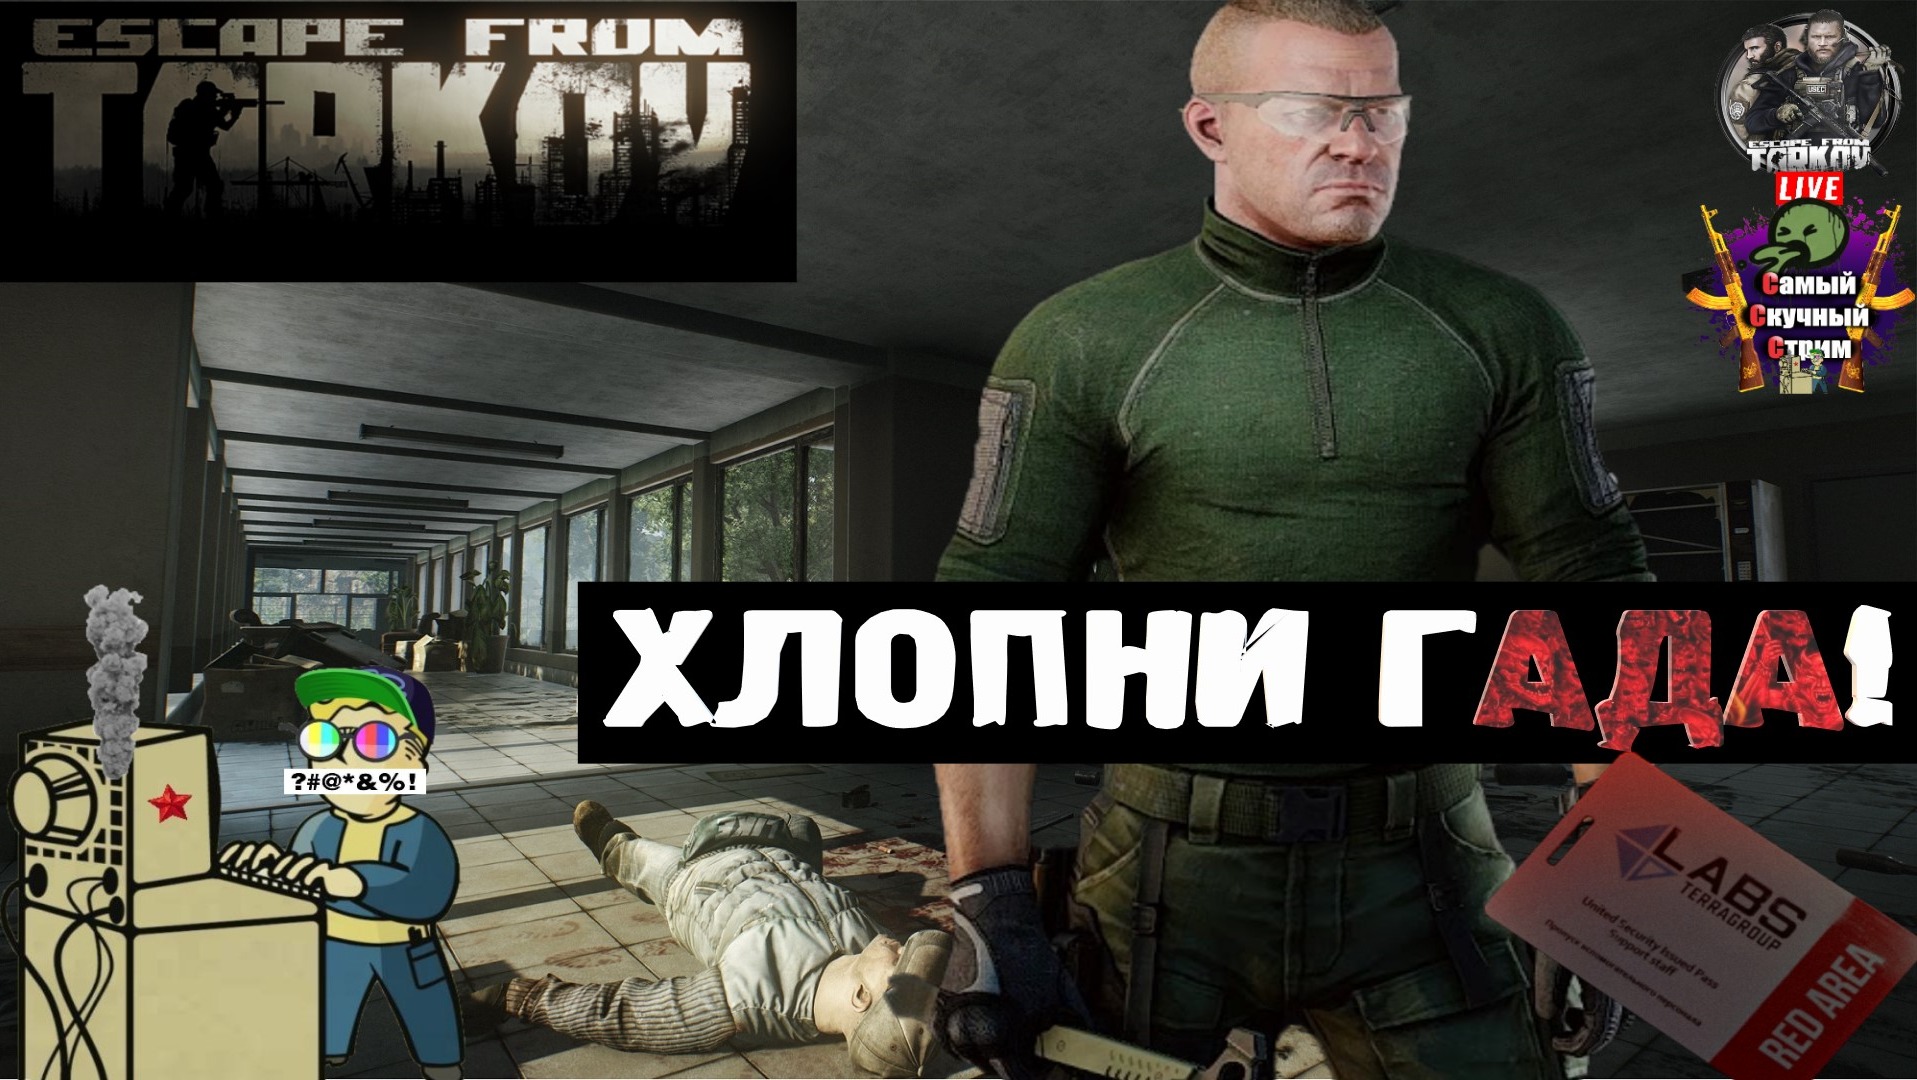 Escape from Tarkov | Побег из Таркова | Хлопни гада!  #stream #escapefromtarkov  #лифтремонт